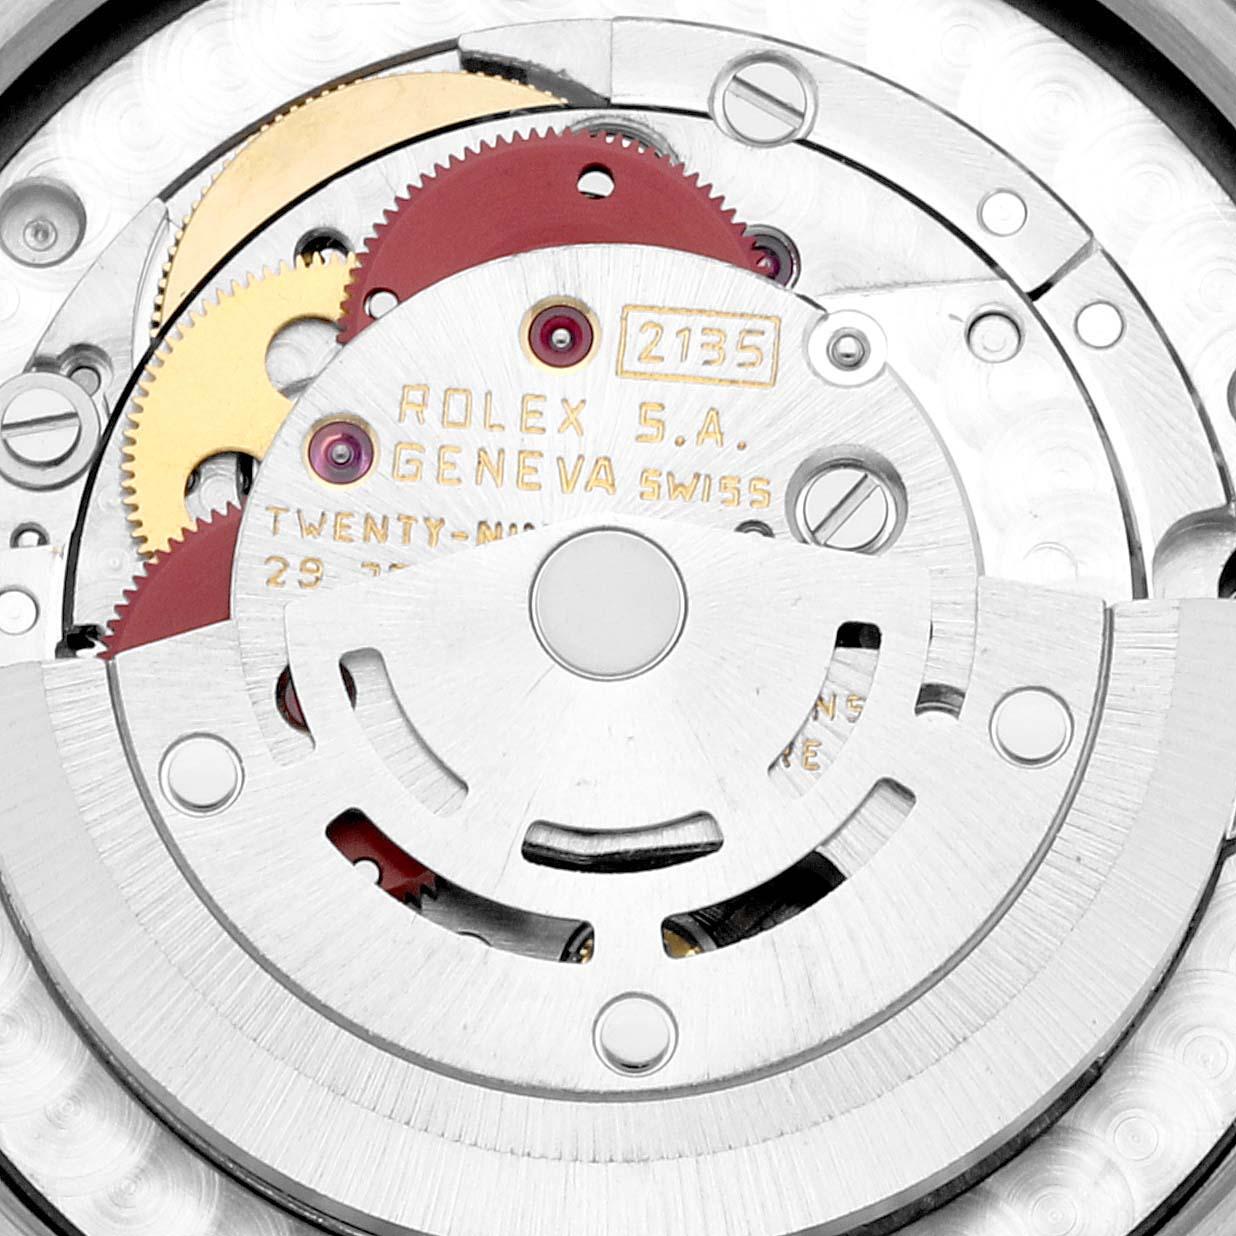 Rolex President Midsize Tridor White Yellow Rose Gold Diamond Ladies Watch 68279. Mouvement automatique à remontage automatique, officiellement certifié chronomètre. Boîtier oyster en or blanc 18k de 31,0 mm de diamètre. Logo Rolex sur la couronne.